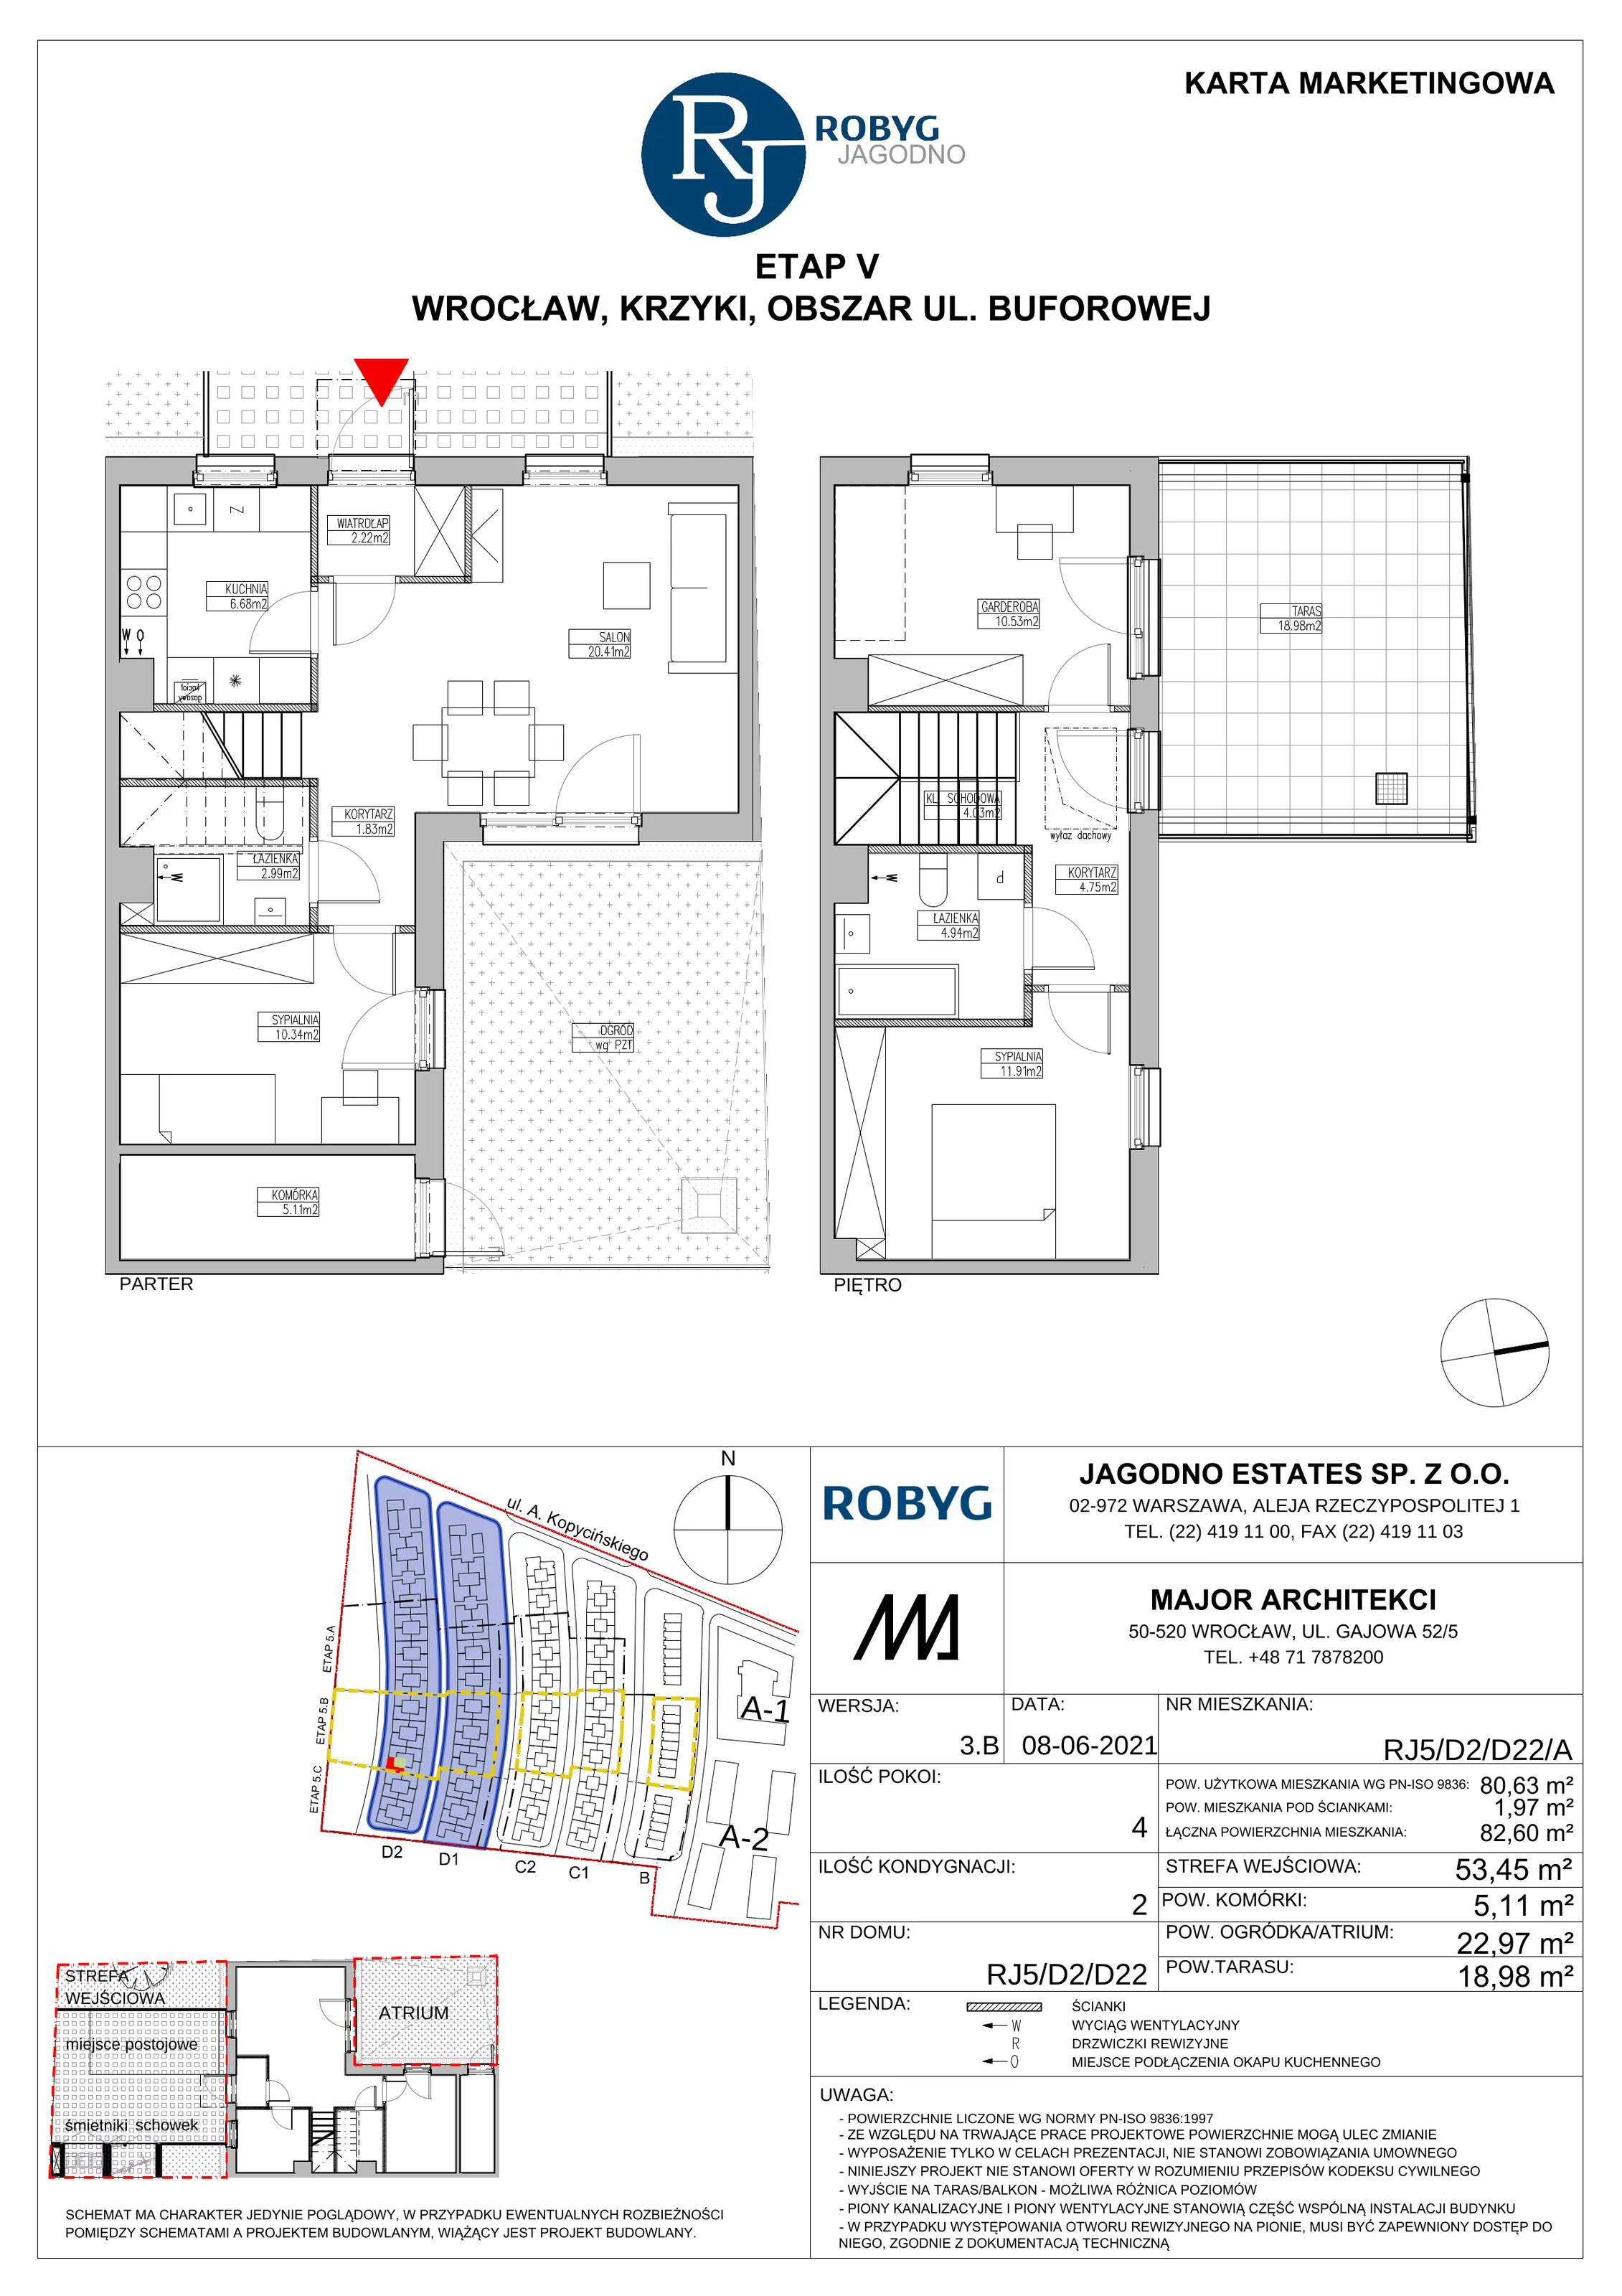 Dom 80,63 m², oferta nr RJ5/D2/D22/A, Robyg Jagodno, Wrocław, Jagodno, Krzyki, ul. Kopycińskiego